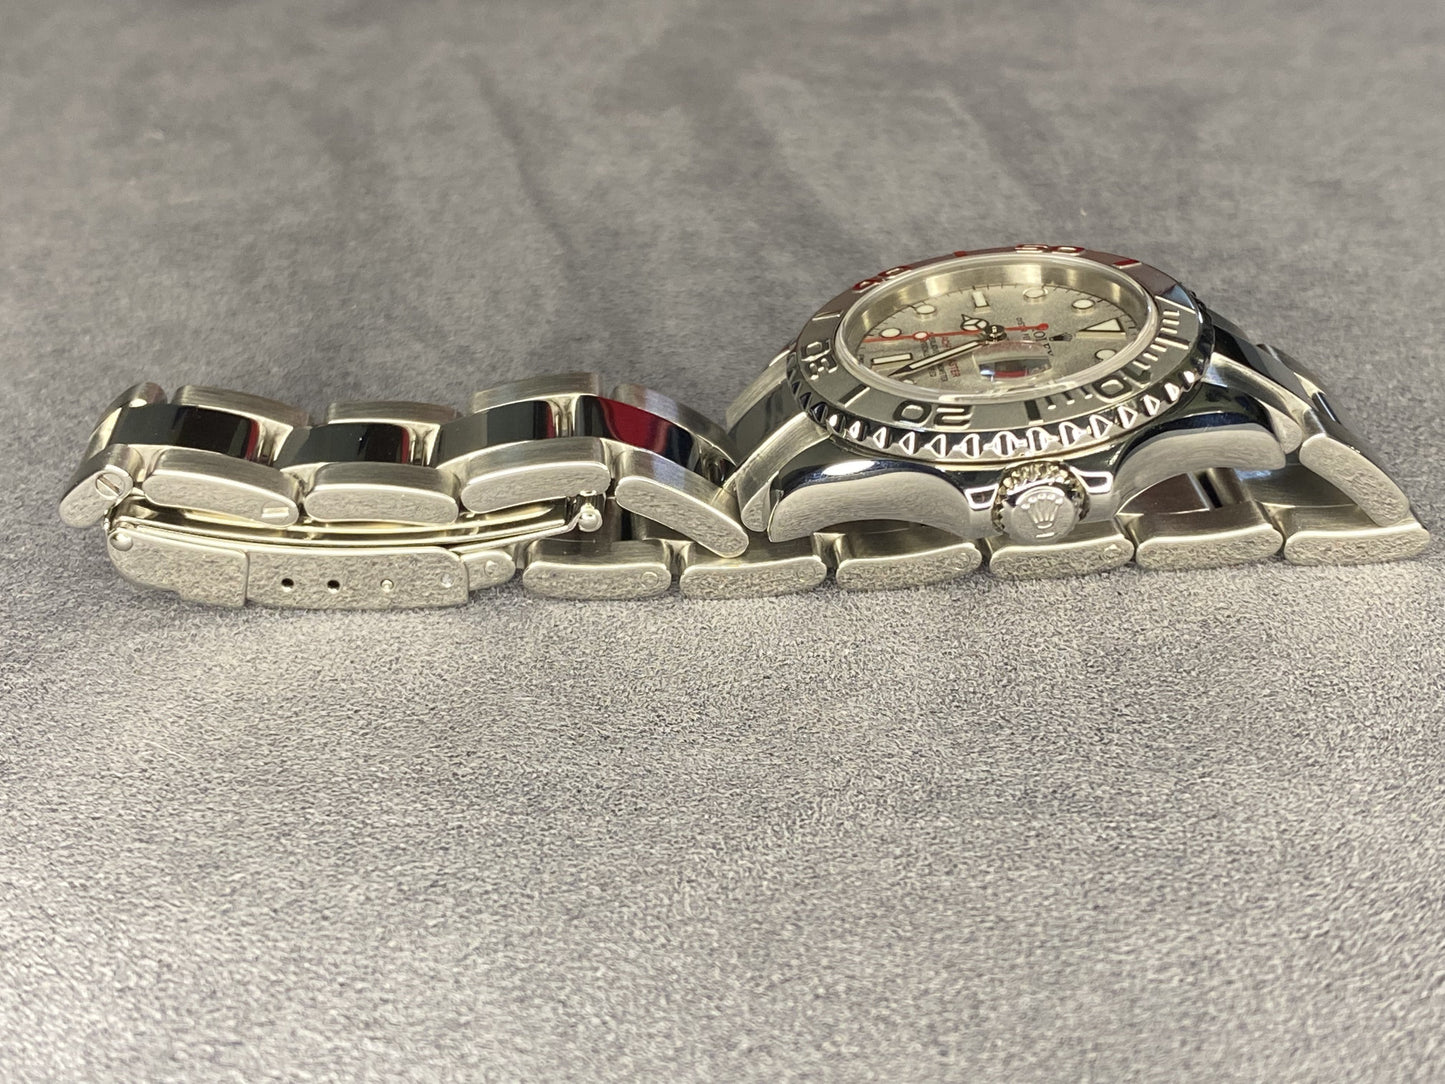 Rolex Yacht Master 169622 Ladies Watch Full set - PM Vintage Watches - Rolex